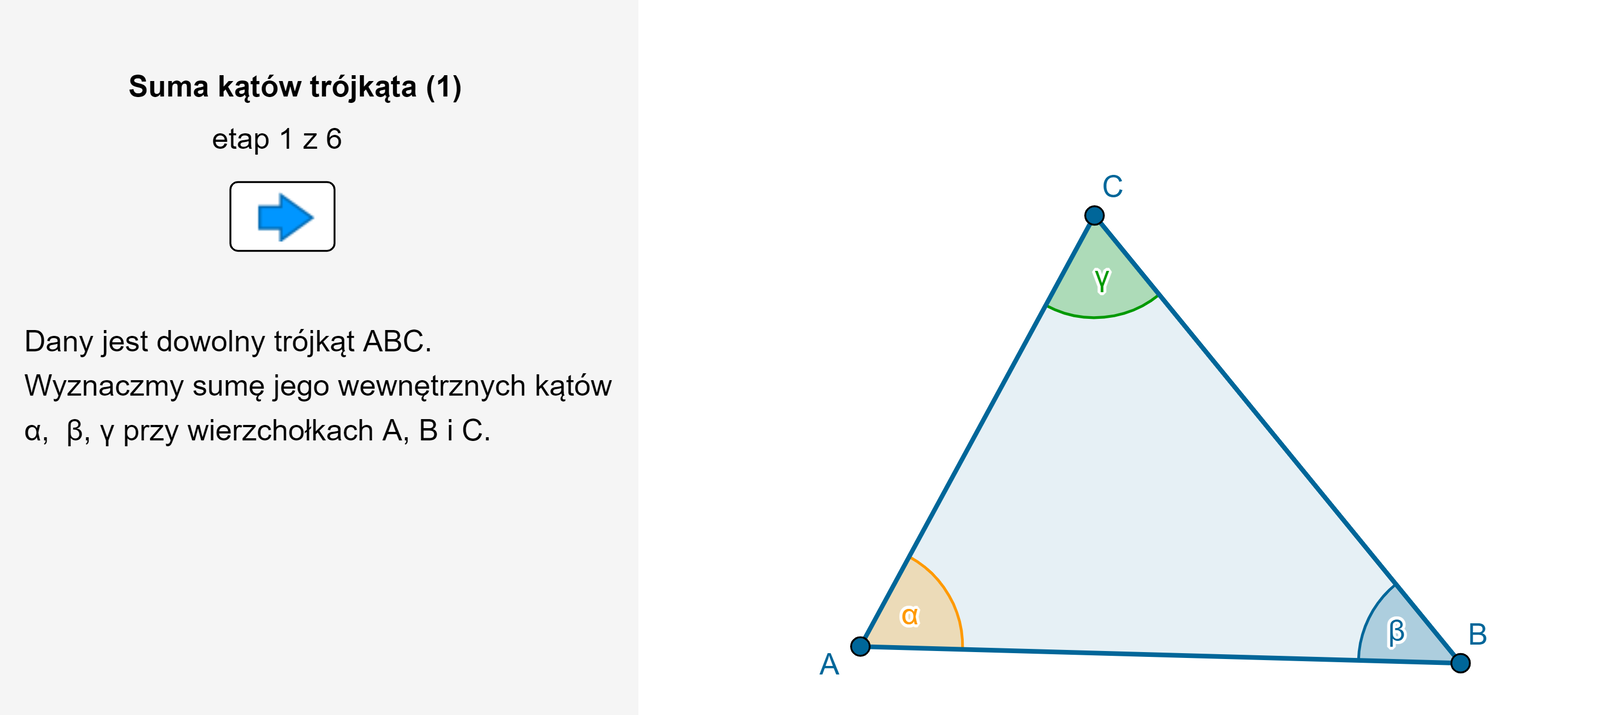 Animacja pokazuje w sześciu krokach, że suma miar kątów wewnętrznych w trójkącie jest równa 180 stopni. Dany jest trójkąt A B C o kątach wewnętrznych alfa, beta, gamma. Zaznaczamy punkty K i L, które są środkami boków AC i BC. Prowadzimy odcinek KL. Odbijamy trójkąt K L C w symetrii względem prostej KL. Kąt gamma przekształcił się w kąt gamma prim i oba kąty mają taką samą miarę. Zaznaczamy punkt E na boku AB i odbijamy trójkąt A E K w symetrii względem prostej KE. Kąt alfa przekształcił się w kąt alfa prim i oba kąty mają taką samą miarę. Zaznaczamy punkt F na boku AB i odbijamy trójkąt F B L w symetrii względem prostej L F. Kąt beta przekształcił się w kąt beta prim i oba kąty mają taką samą miarę. Powstał prostokąt K L F E. Wszystkie kąty trójkąta A B C mają wspólny wierzchołek leżący na boku EF prostokąta (także na boku AB trójkąta). Zauważamy, że suma kątów alfa prim plus beta prim plus gamma prim jest równa 180 stopni. Ponieważ kąt alfa prim jest równy alfa, kąt beta prim jest równy beta a kąt gamma prim jest równy gamma, więc suma kątów alfa plus beta plus gamma jest równa 180 stopni. Zatem: suma kątów wewnętrznych dowolnego trójkąta jest równa 180 stopni.